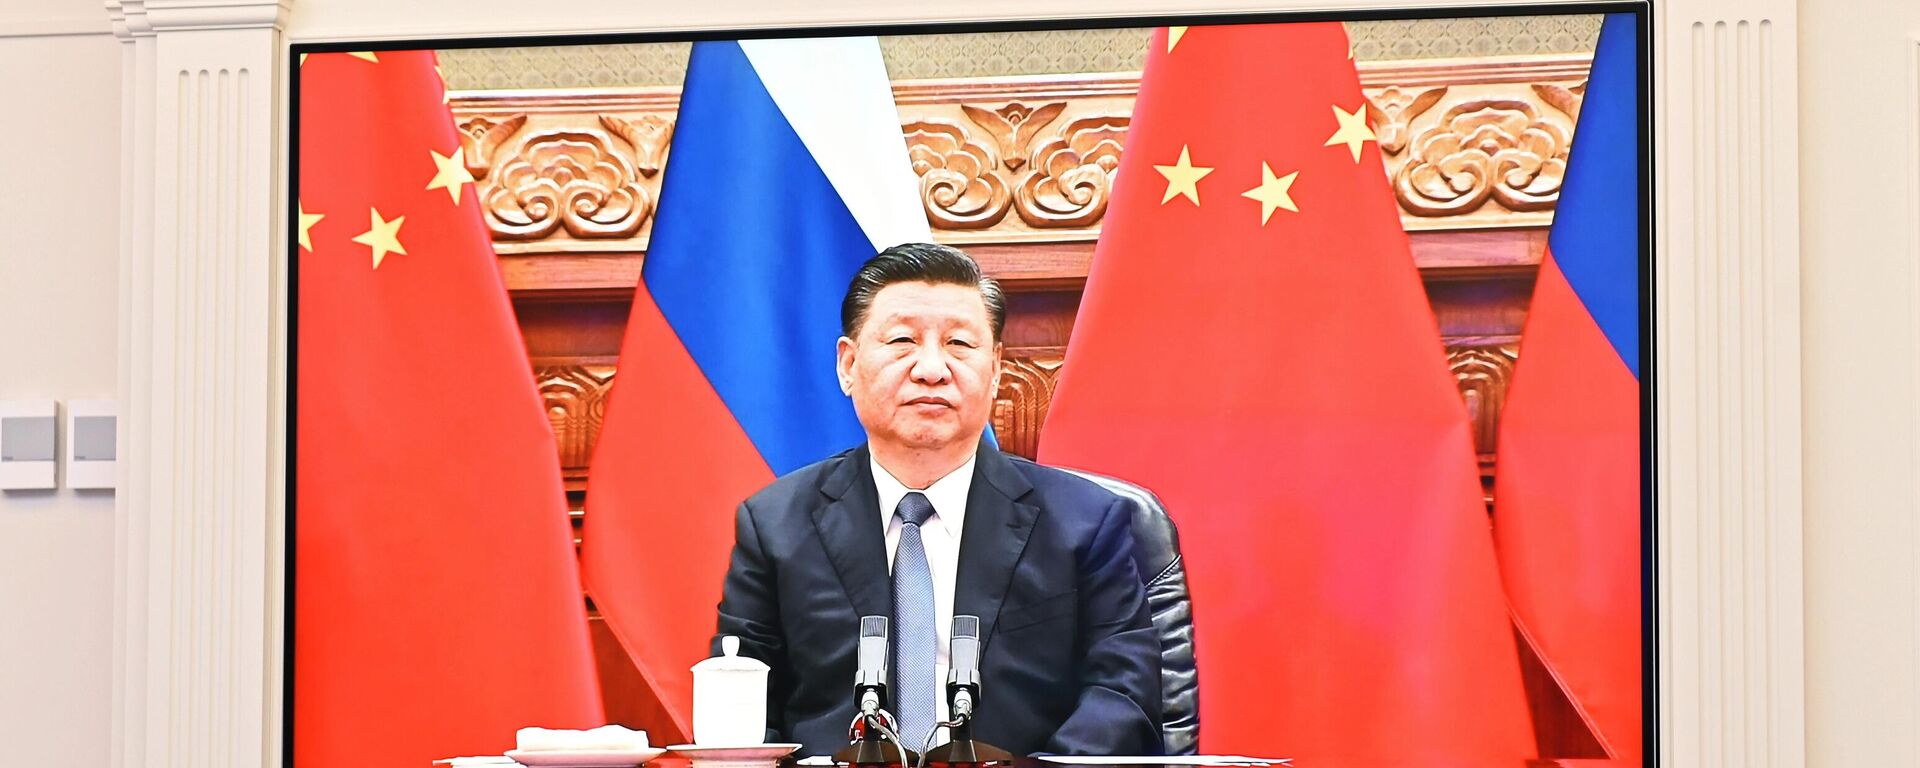 Кинески председник Си Ђинпинг током разговора са руским лидером Владимиром Путином - Sputnik Србија, 1920, 15.12.2021